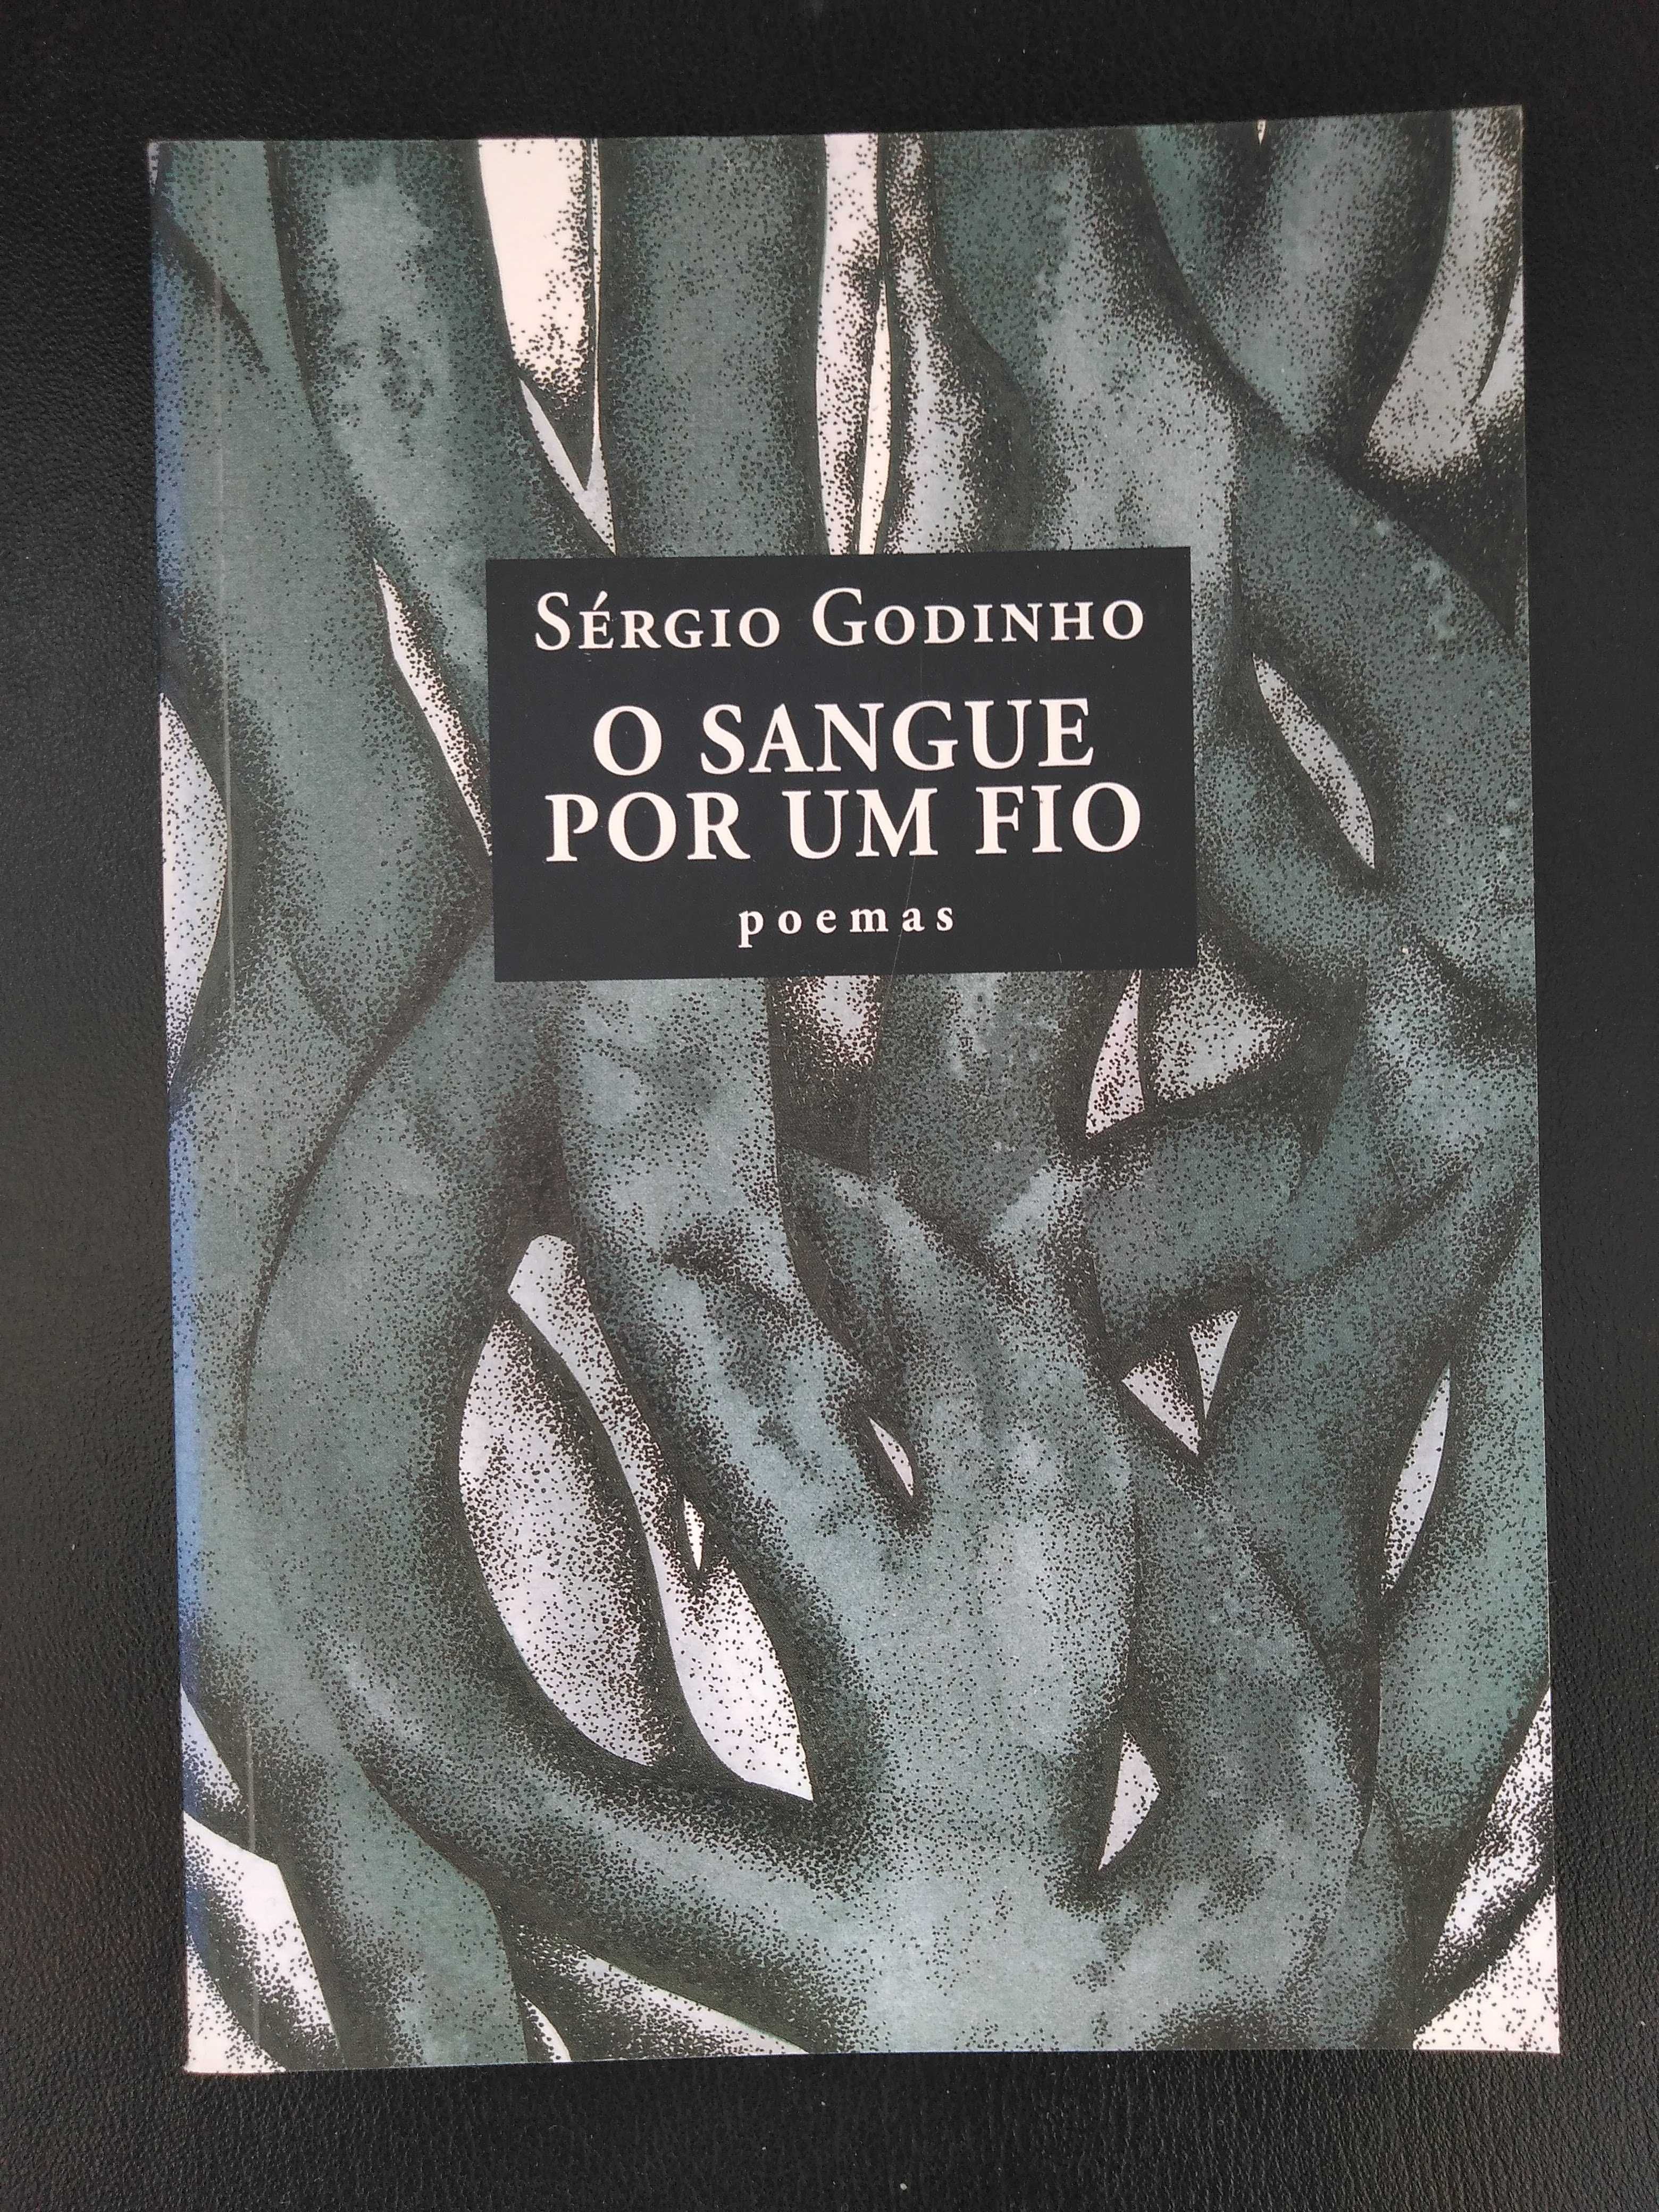 Livro “O sangue por um fio”, de Sérgio Godinho